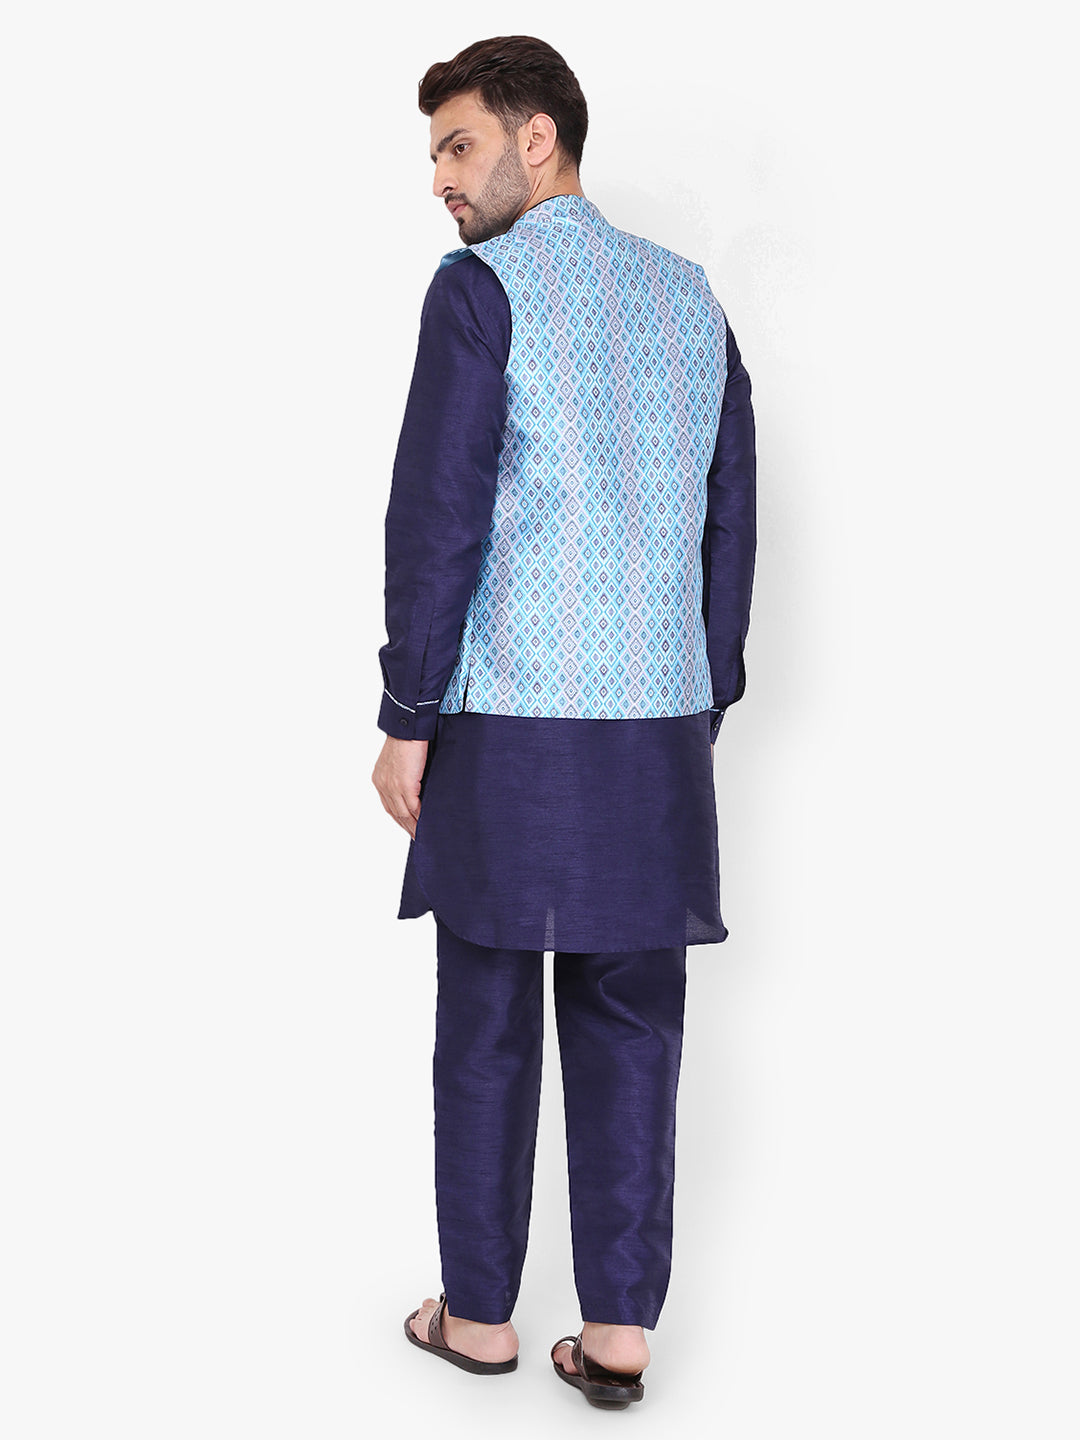 Pro-Ethic Silk Kurta Pajama With Jacket For Men | Navy Blue (C-102)